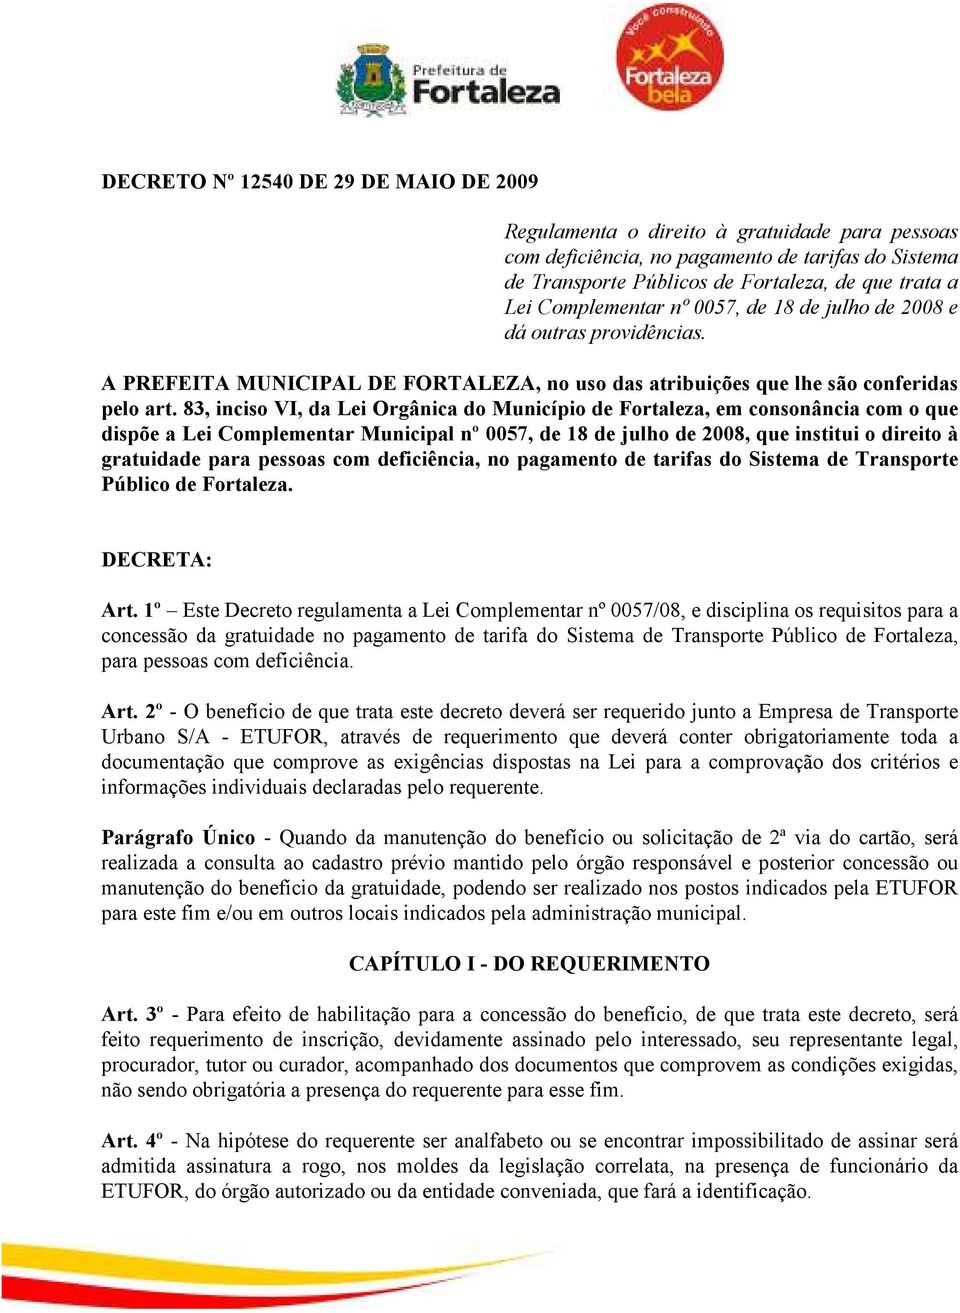 83, inciso VI, da Lei Orgânica do Município de Fortaleza, em consonância com o que dispõe a Lei Complementar Municipal nº 0057, de 18 de julho de 2008, que institui o direito à gratuidade para